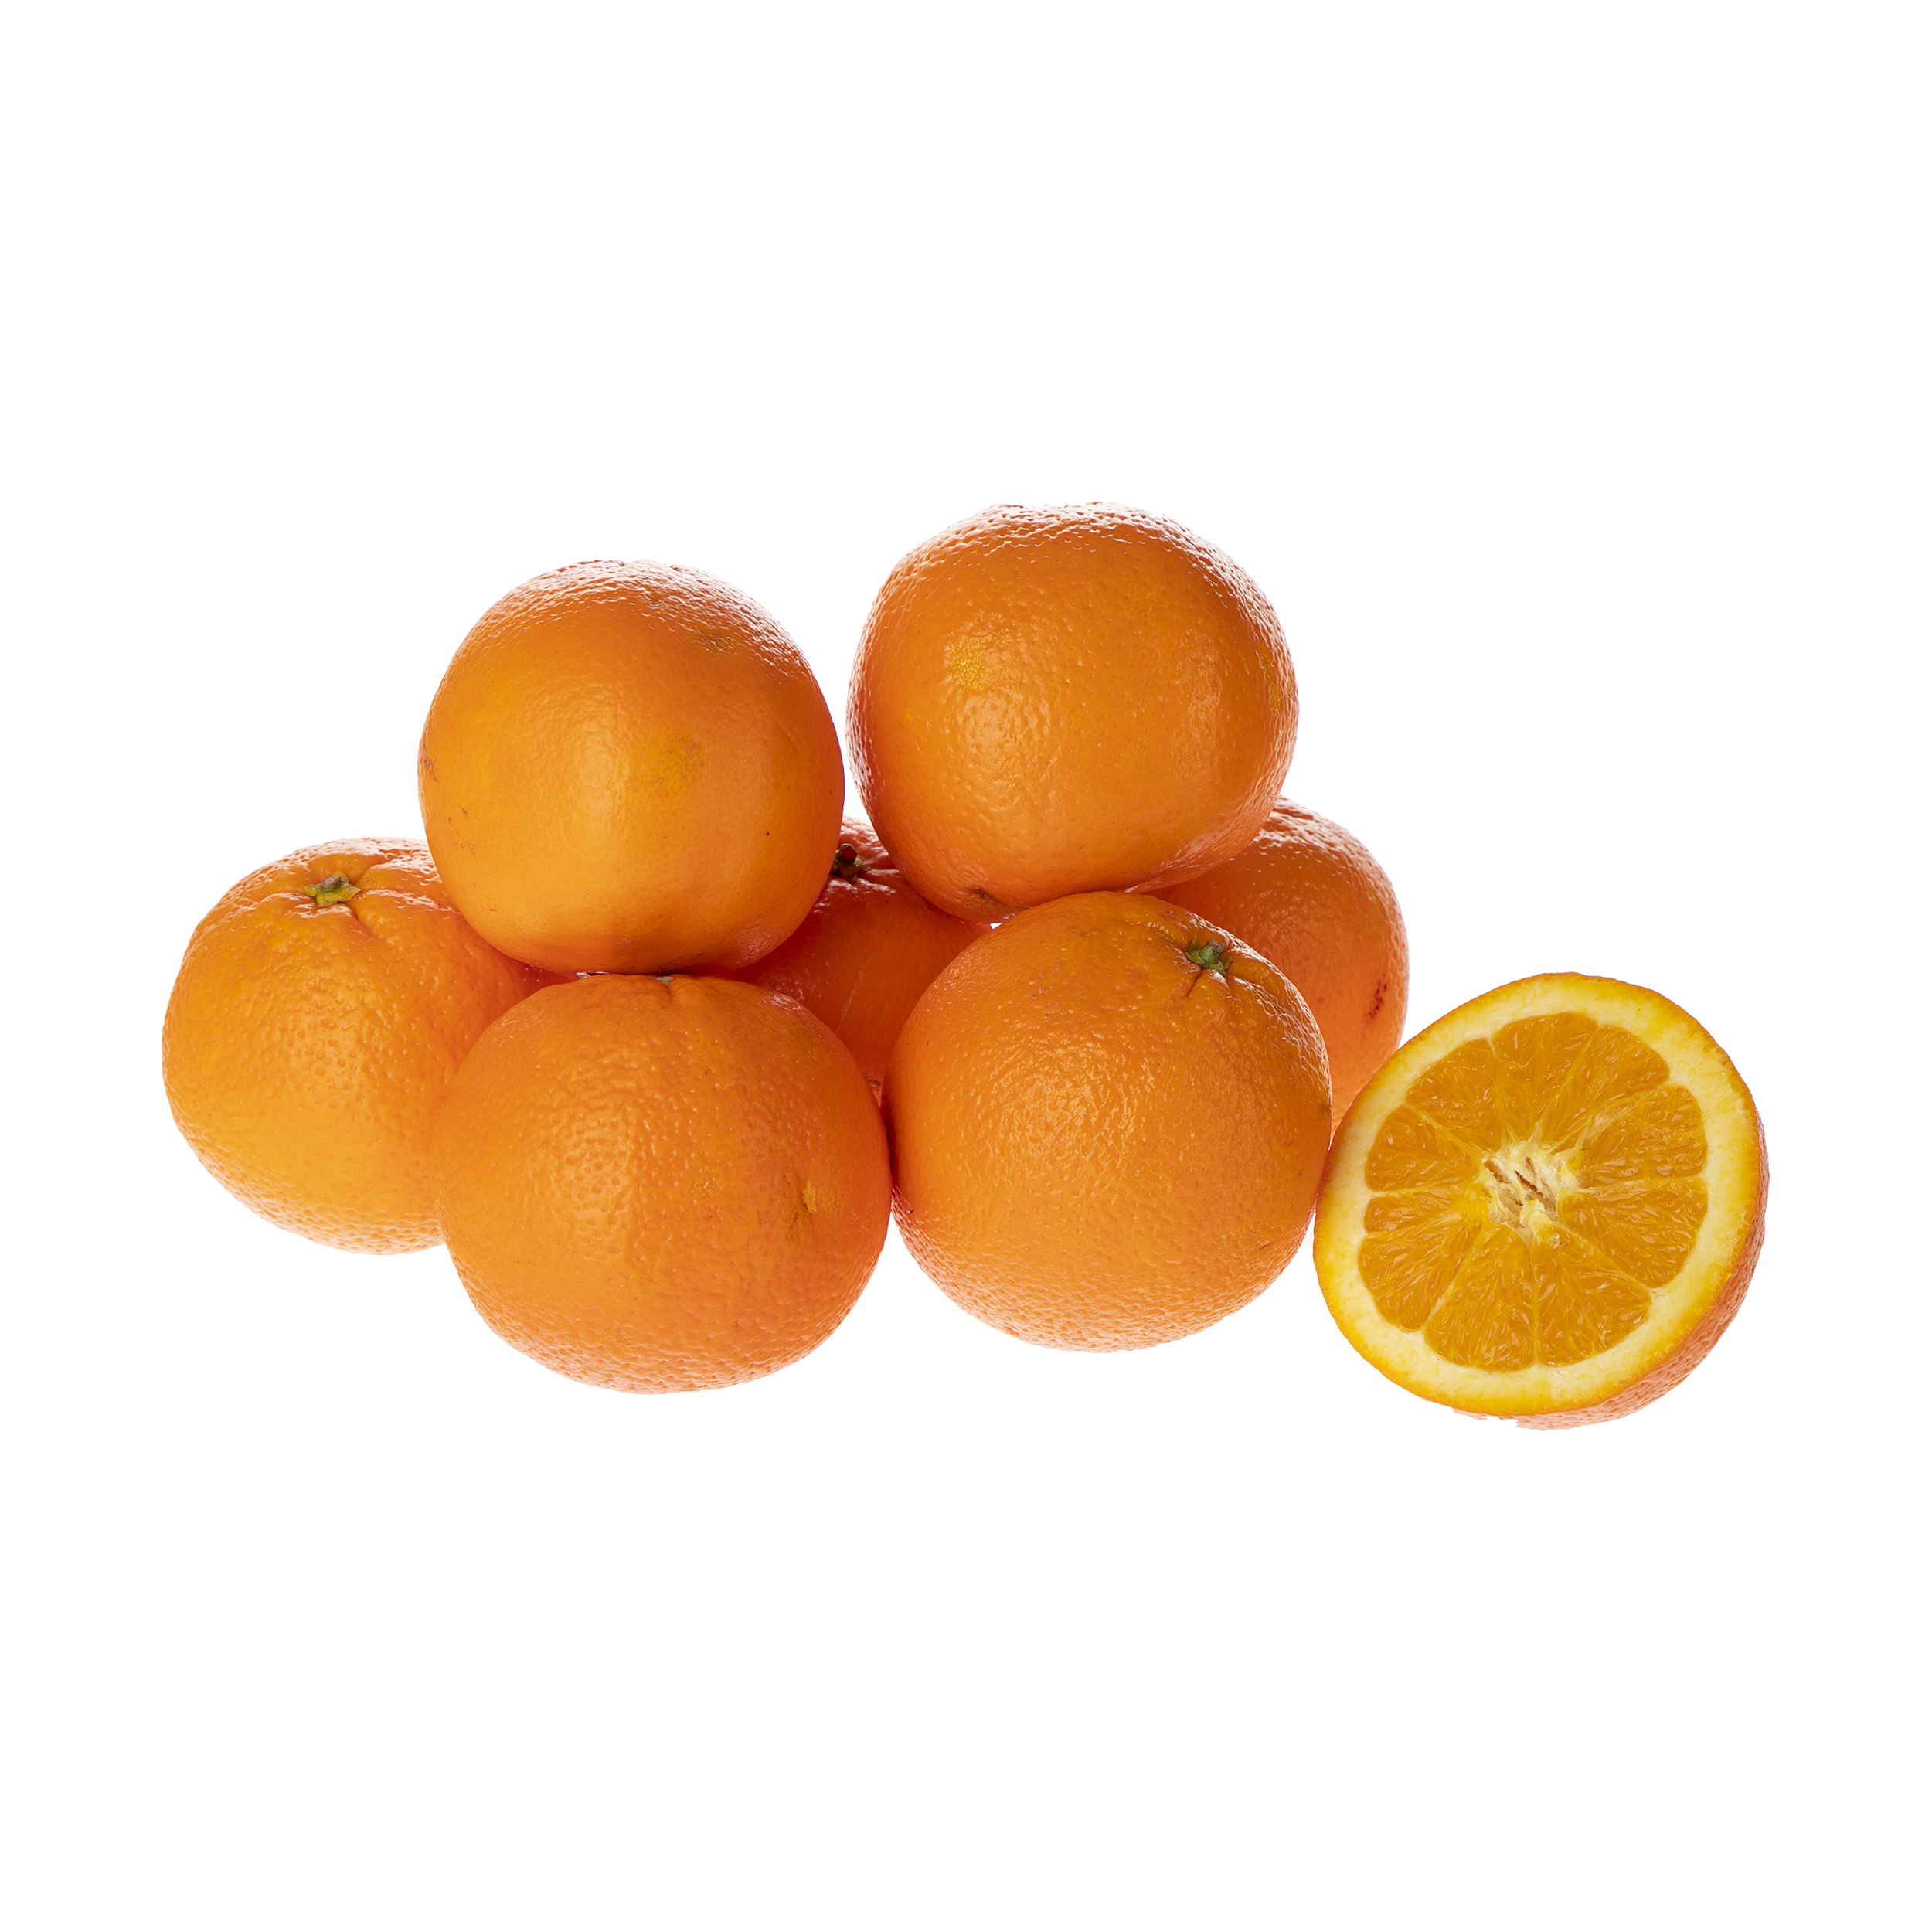 پرتقال تامسون شمال درجه یک - 2 کیلوگرم